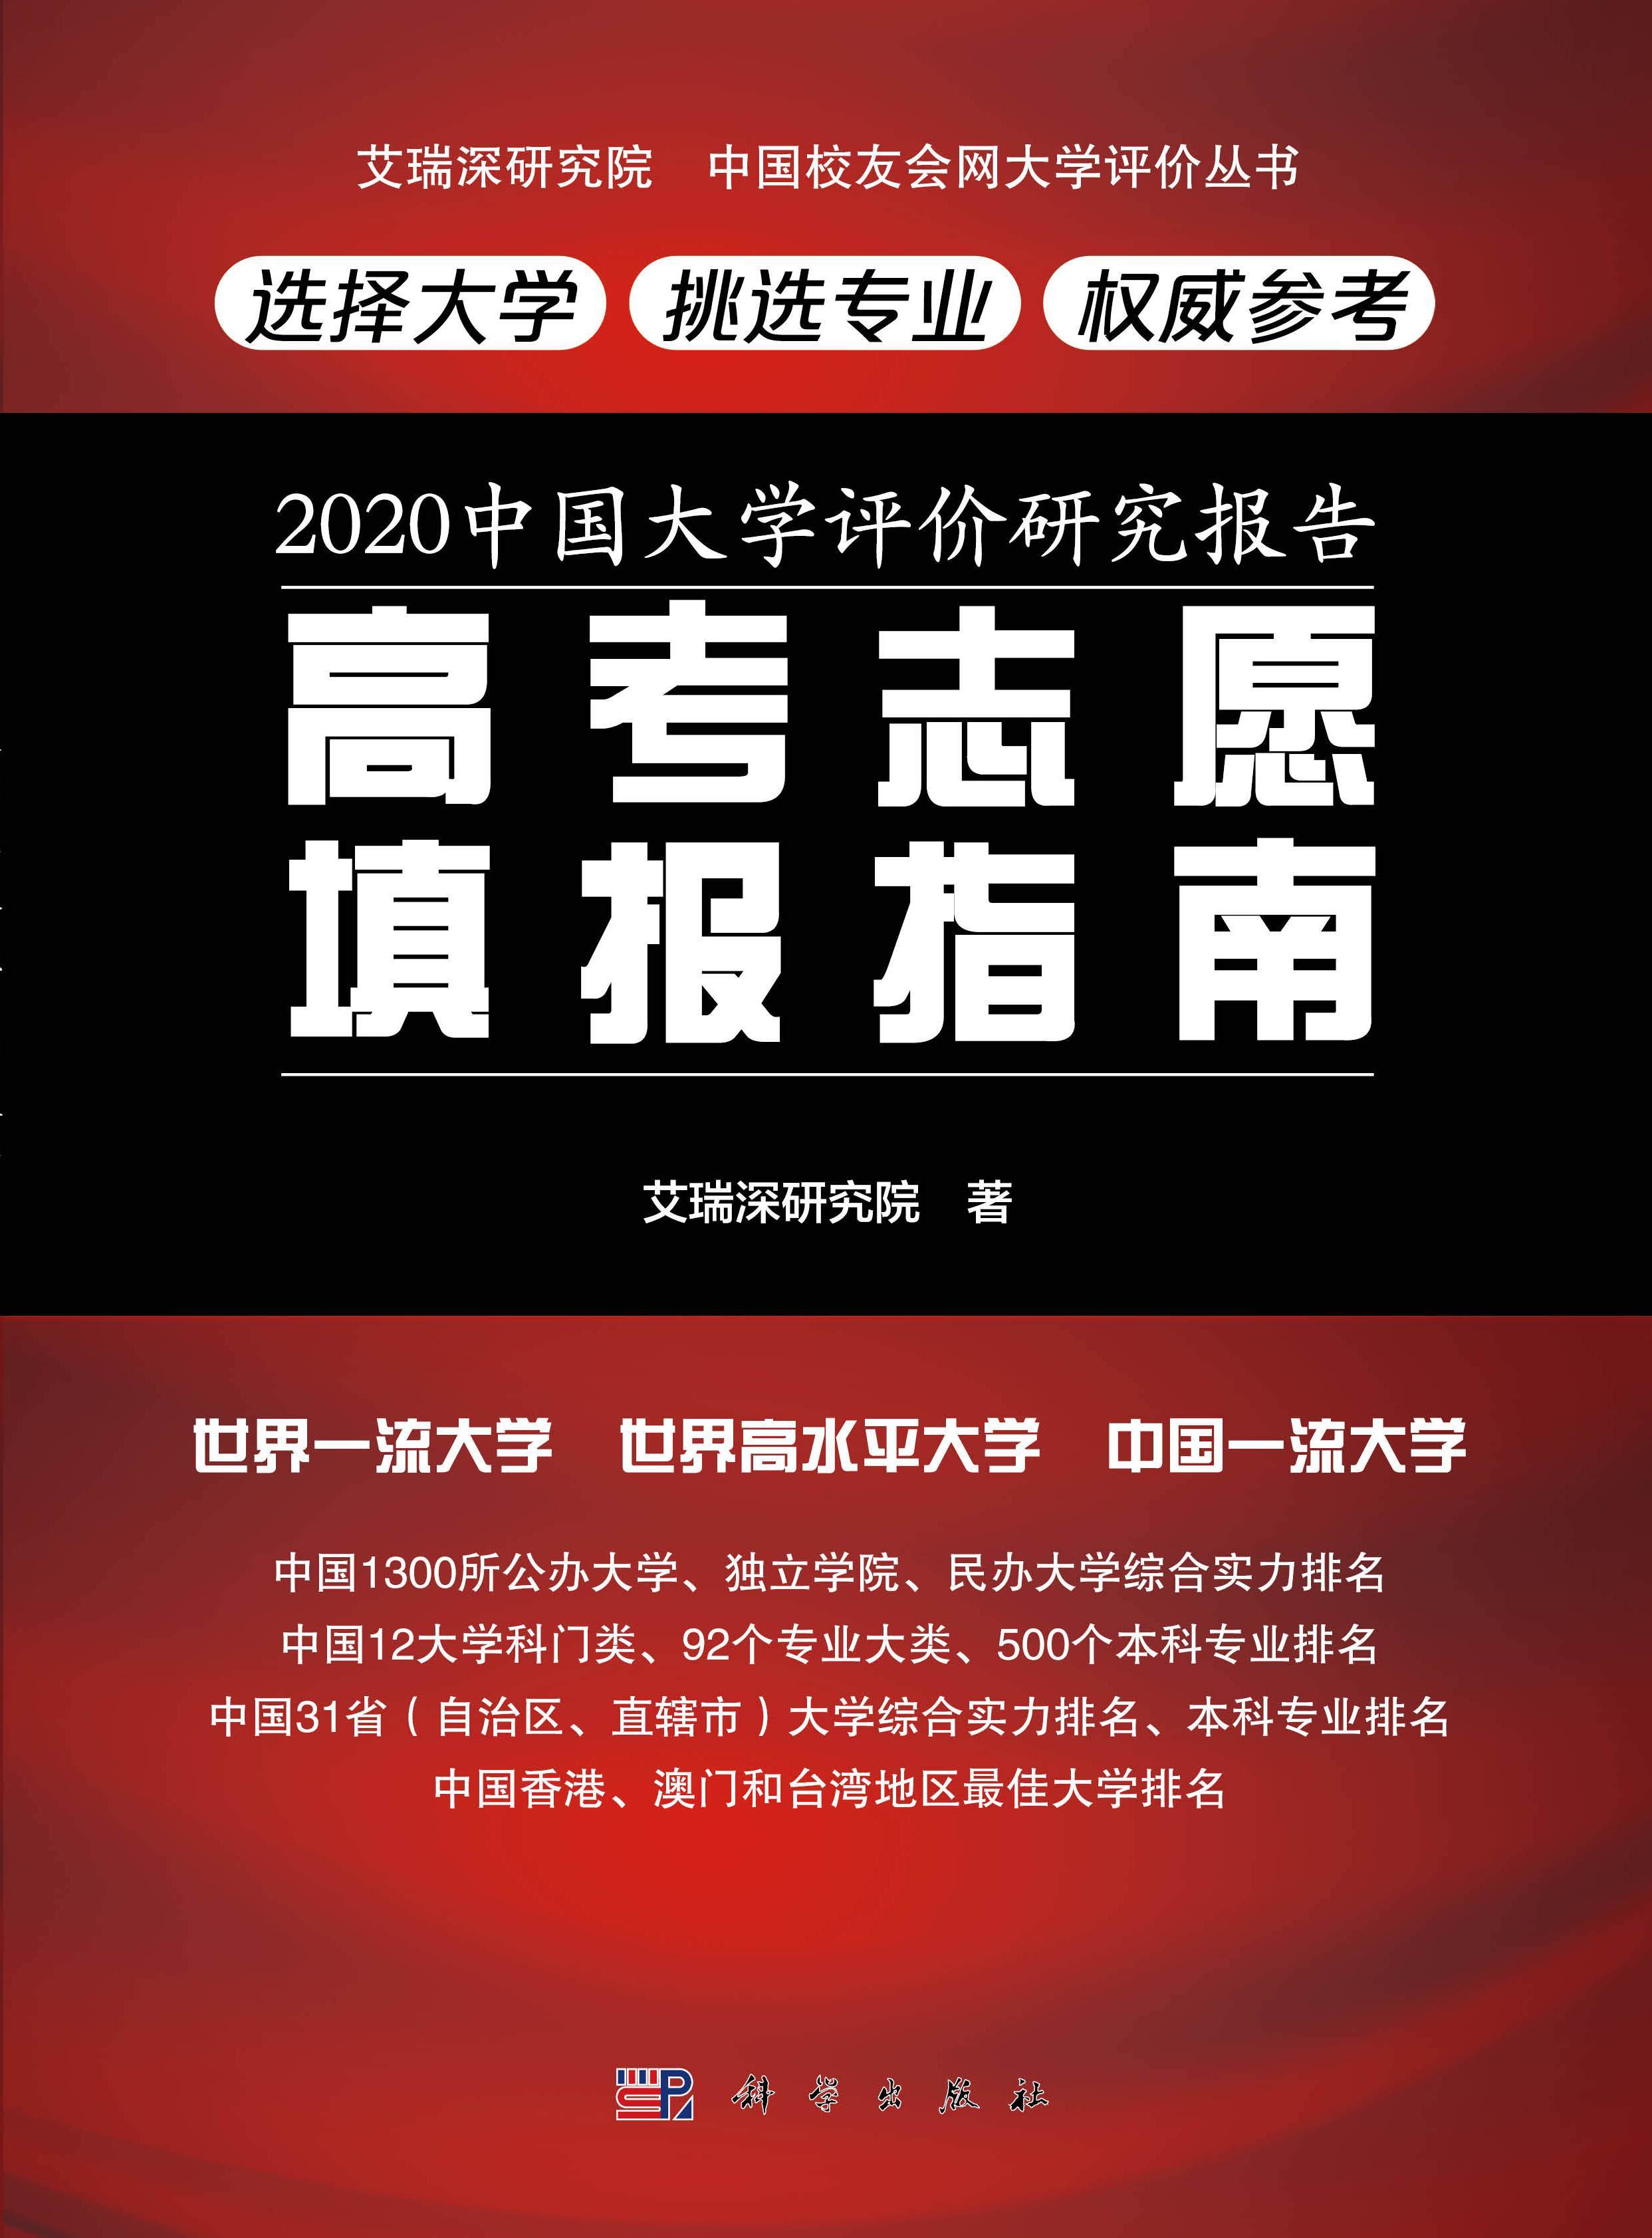 2020中国大学富豪校_艾瑞深校友会网http://www.cuaa.net微信公众号:艾瑞深校